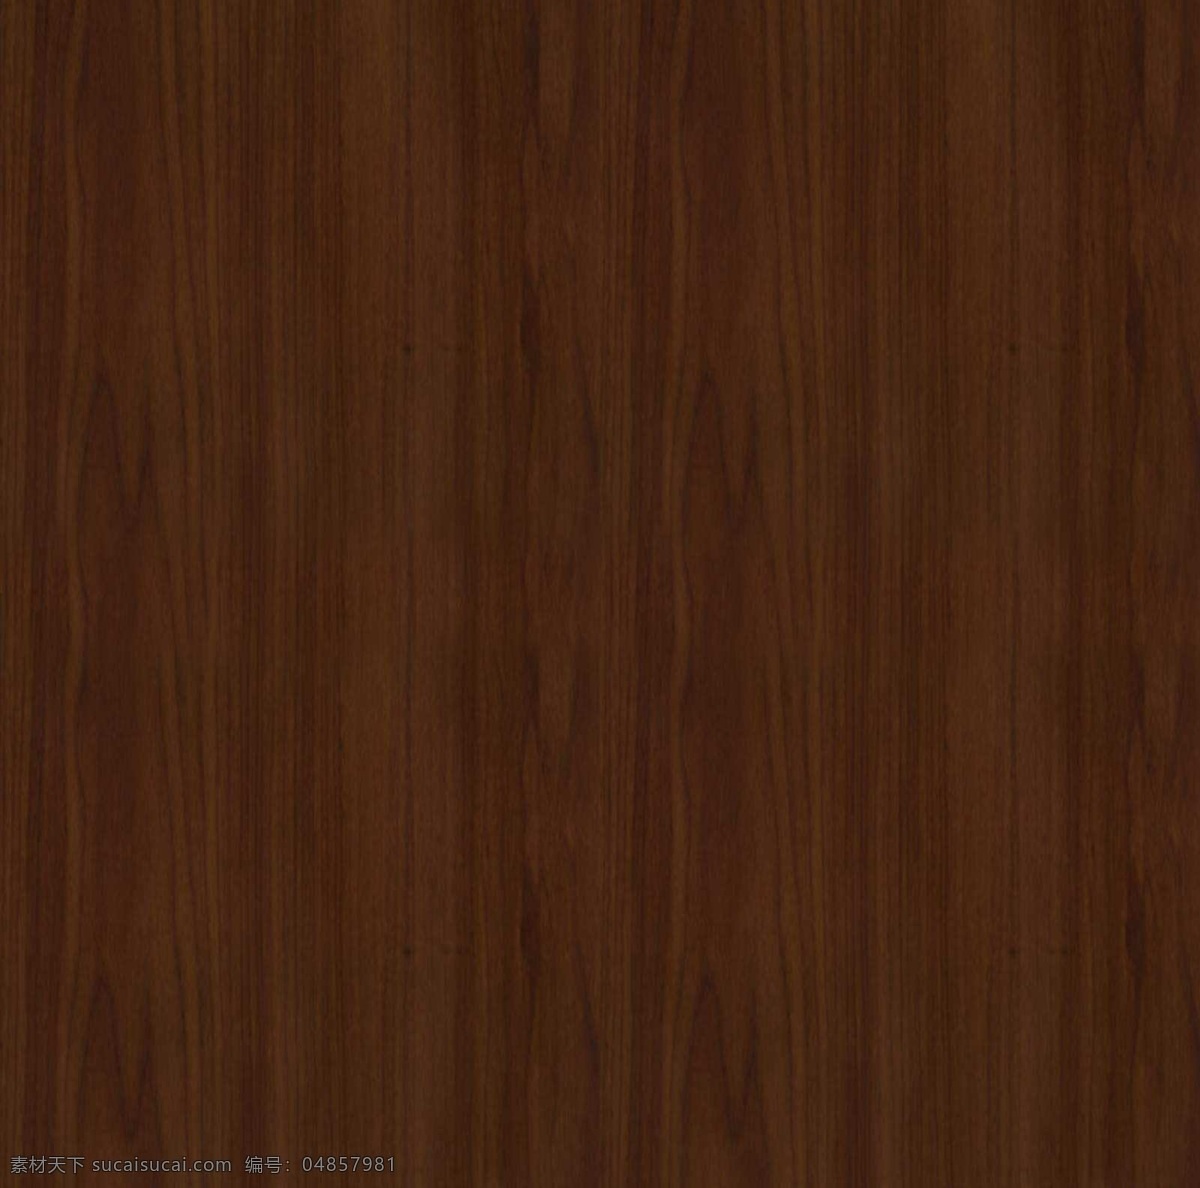 褐色 木头 柜子 3d 模型 稚哪就饭褡 3d模型素材 其他3d模型